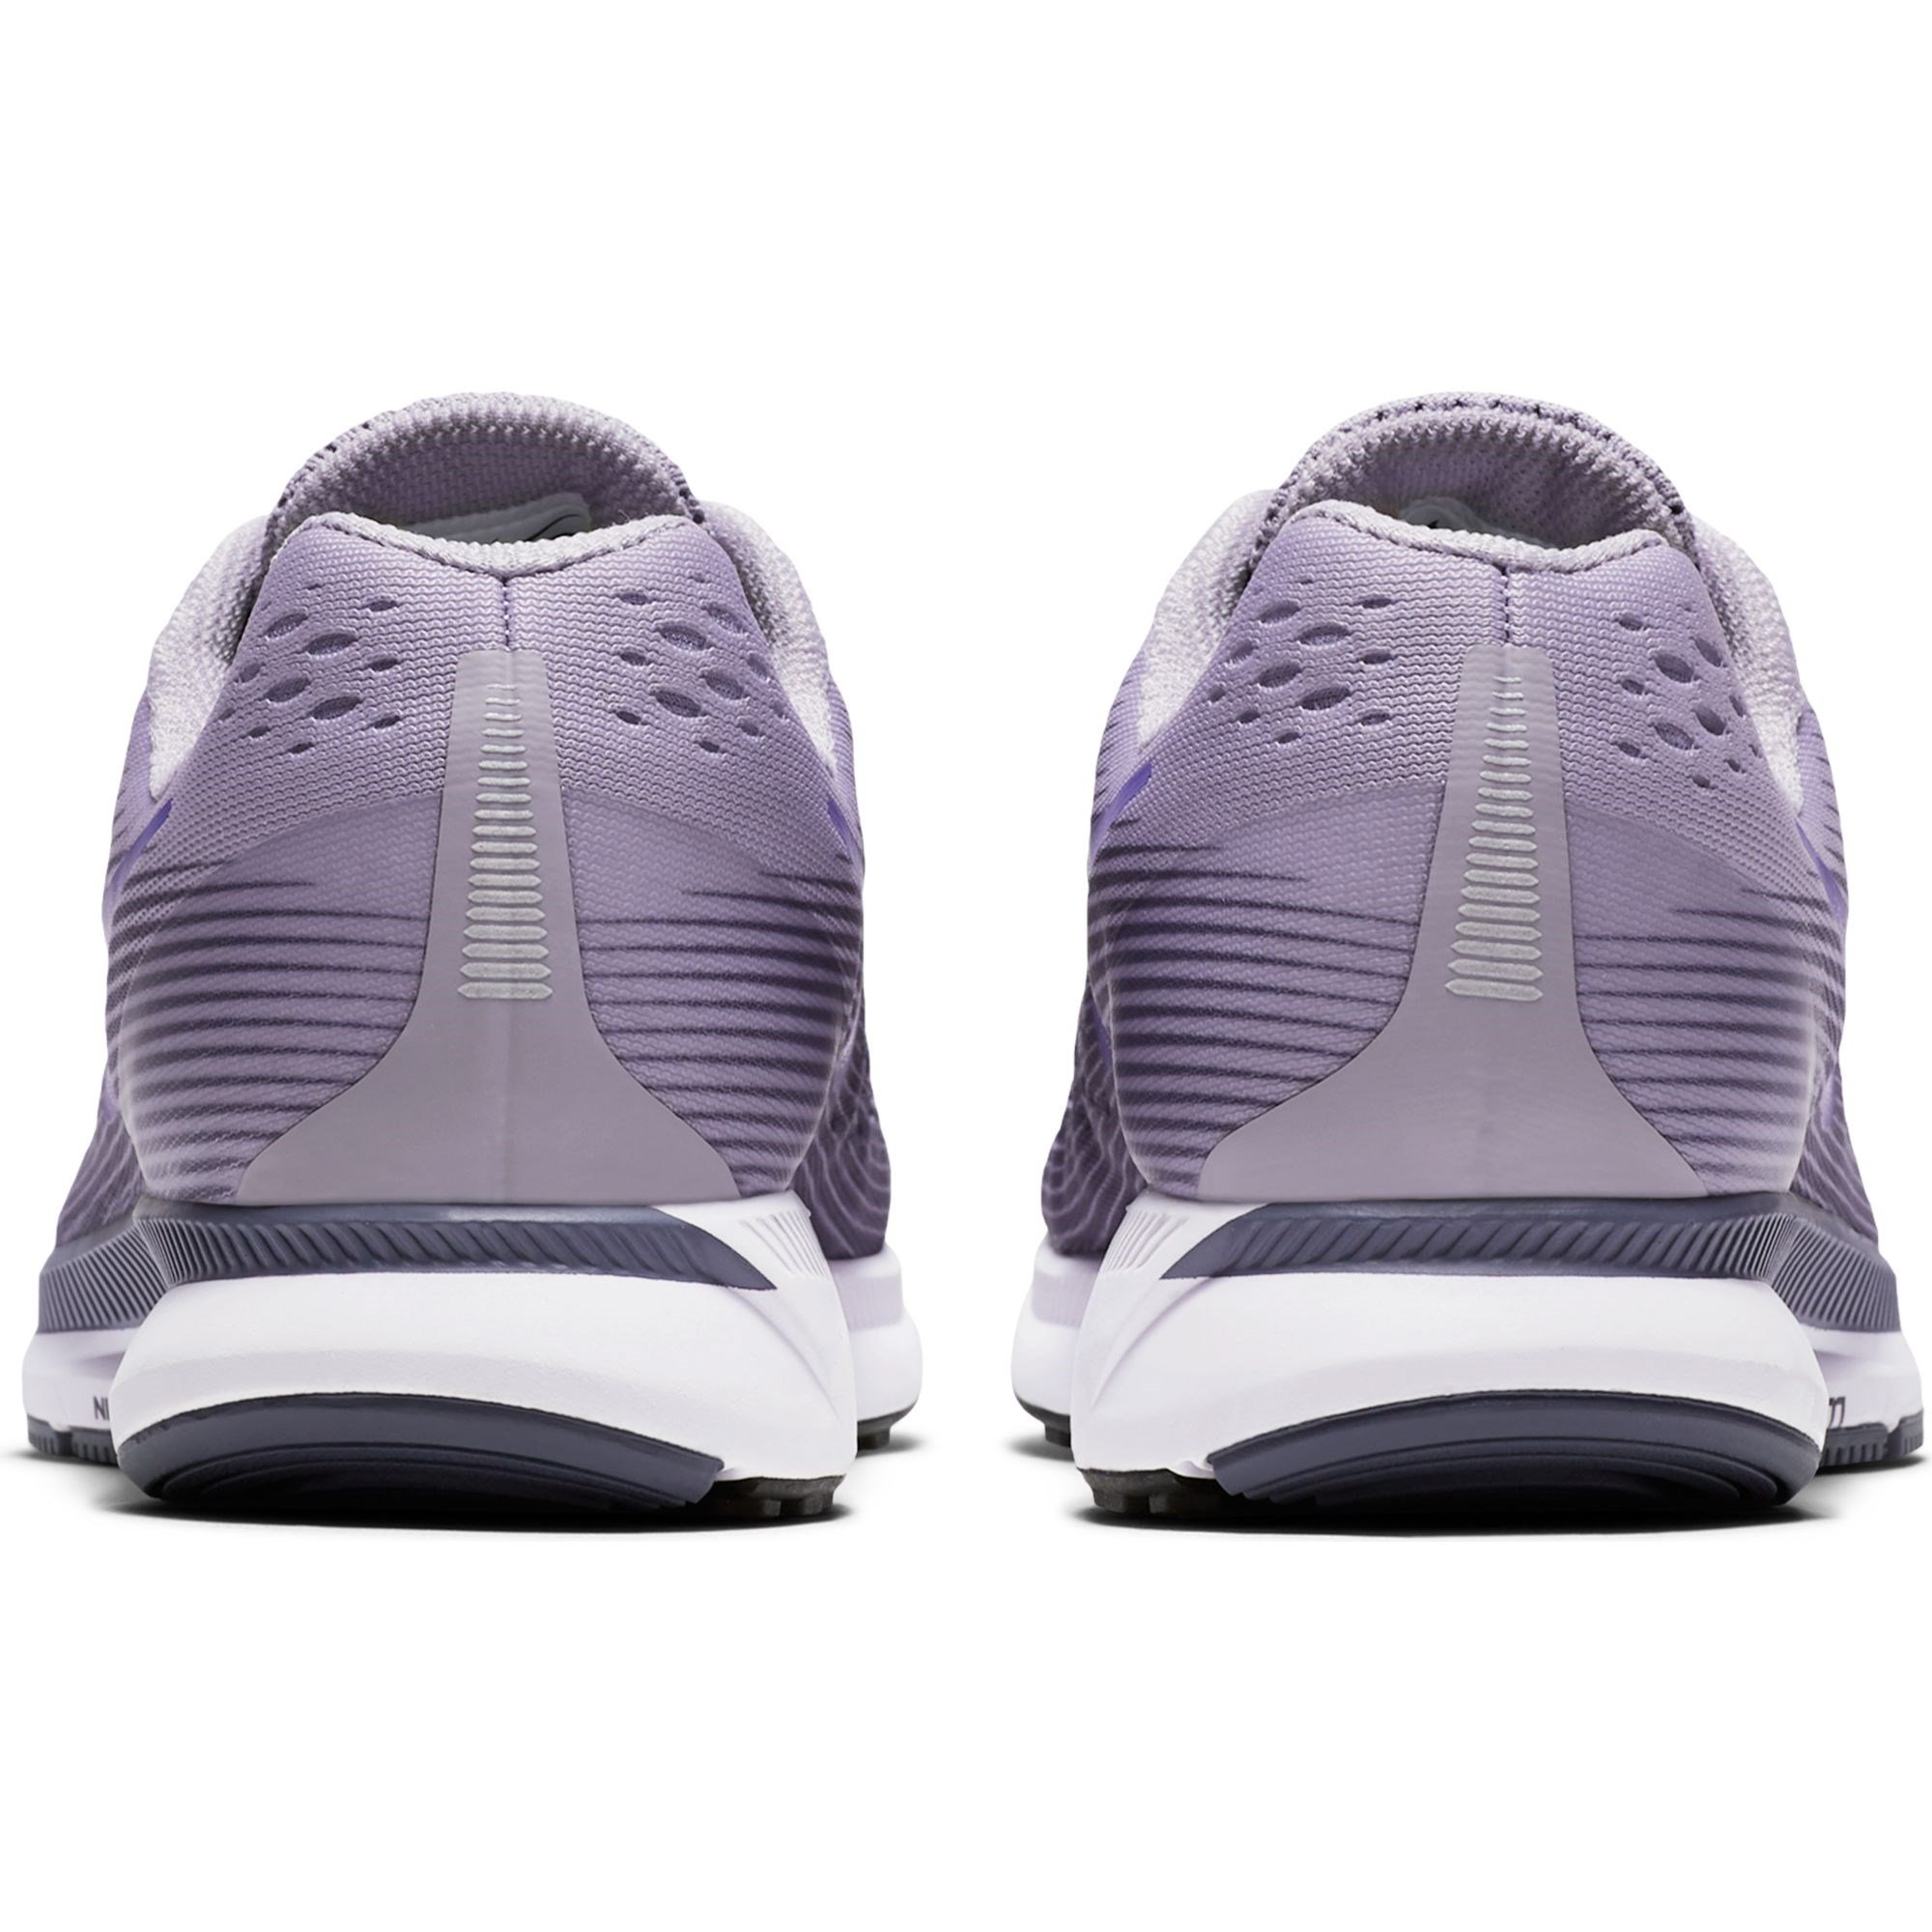 Nike Air Zoom Pegasus 34 Kadın Spor Ayakkabı Ürün kodu: 880560-501 |  Etichet Sport